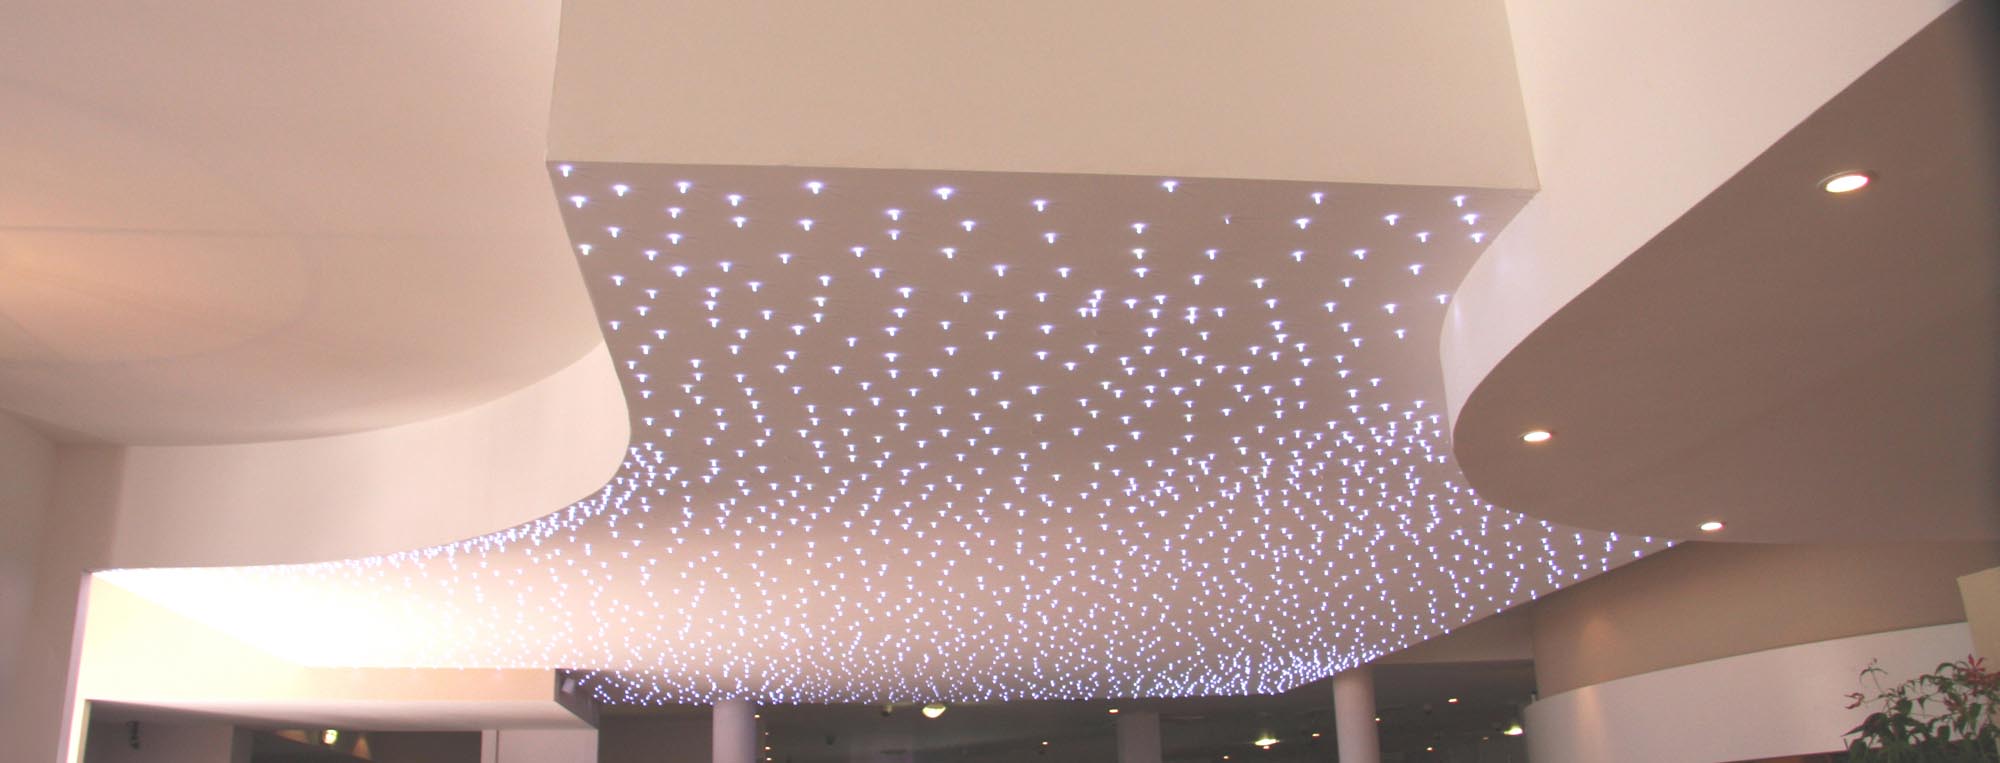 Starlit ceiling or wall, Semeur d'Etoiles - Création lumineuses